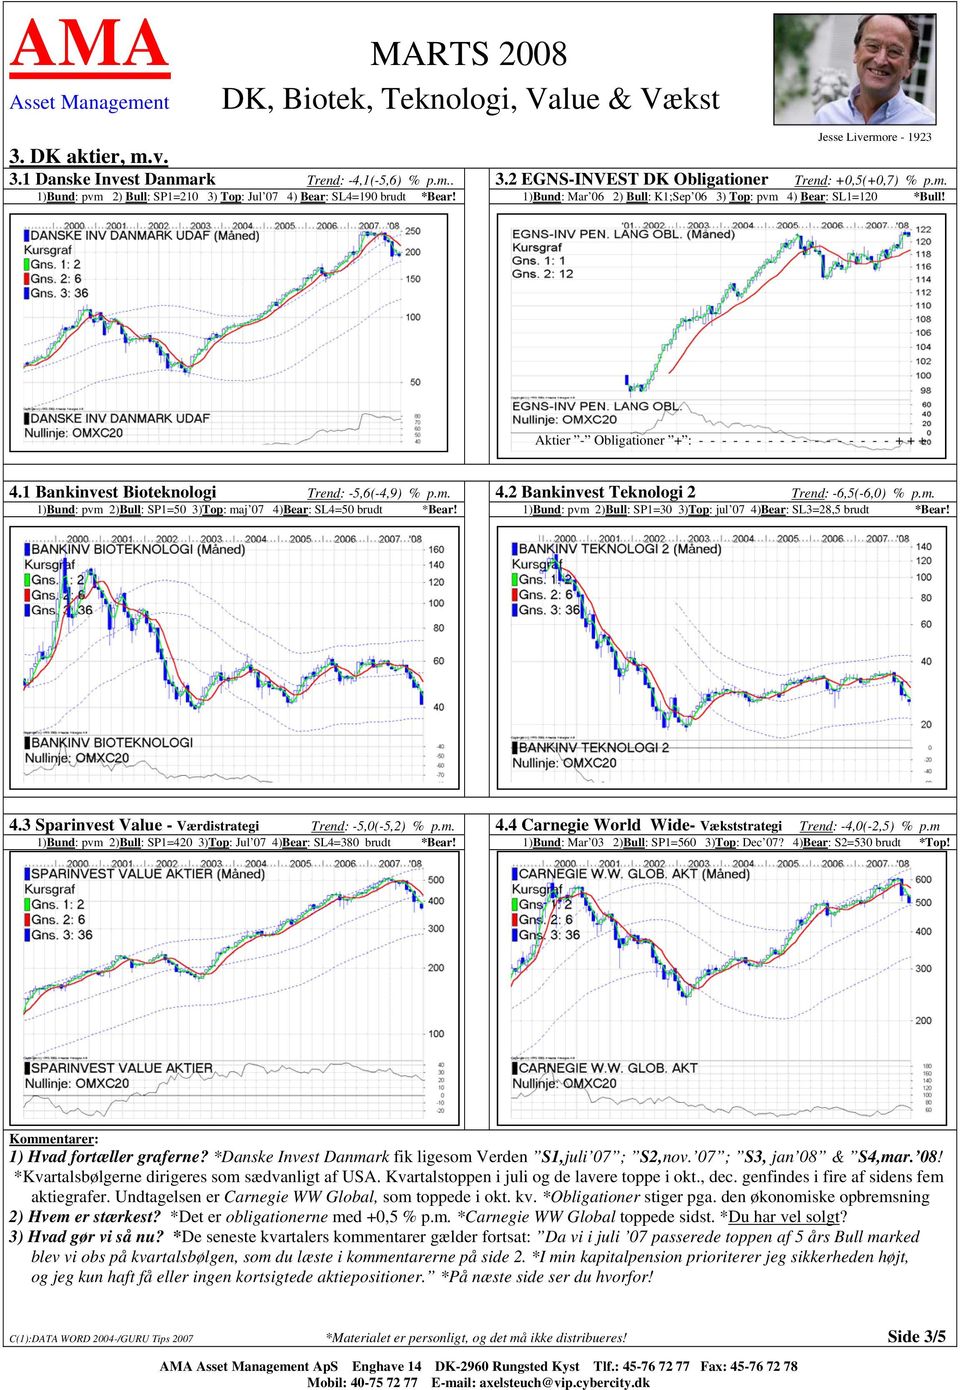 Aktier - Obligationer + : - - - - - - - - - - - - - - - - - + + + 4.1 Bankinvest Bioteknologi Trend: -5,6(-4,9) % p.m. 4.2 Bankinvest Teknologi 2 Trend: -6,5(-6,0) % p.m. 1)Bund: pvm 2)Bull: SP1=50 3)Top: maj 07 4)Bear: SL4=50 brudt *Bear!